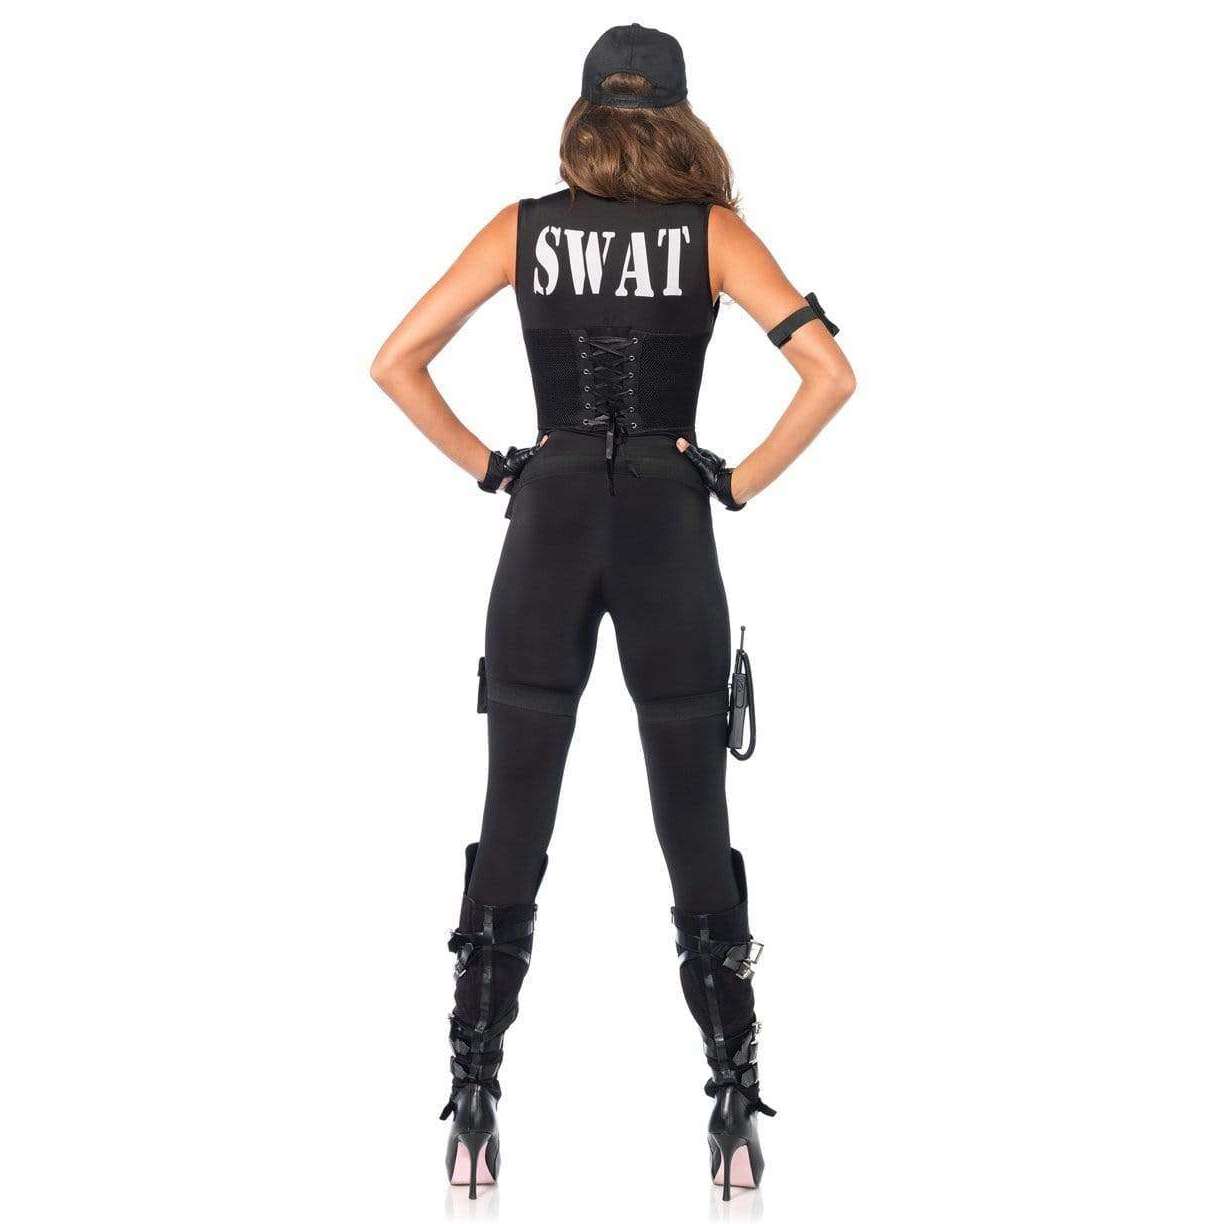 Sexy Deluxe Swat Commander Adult Costume